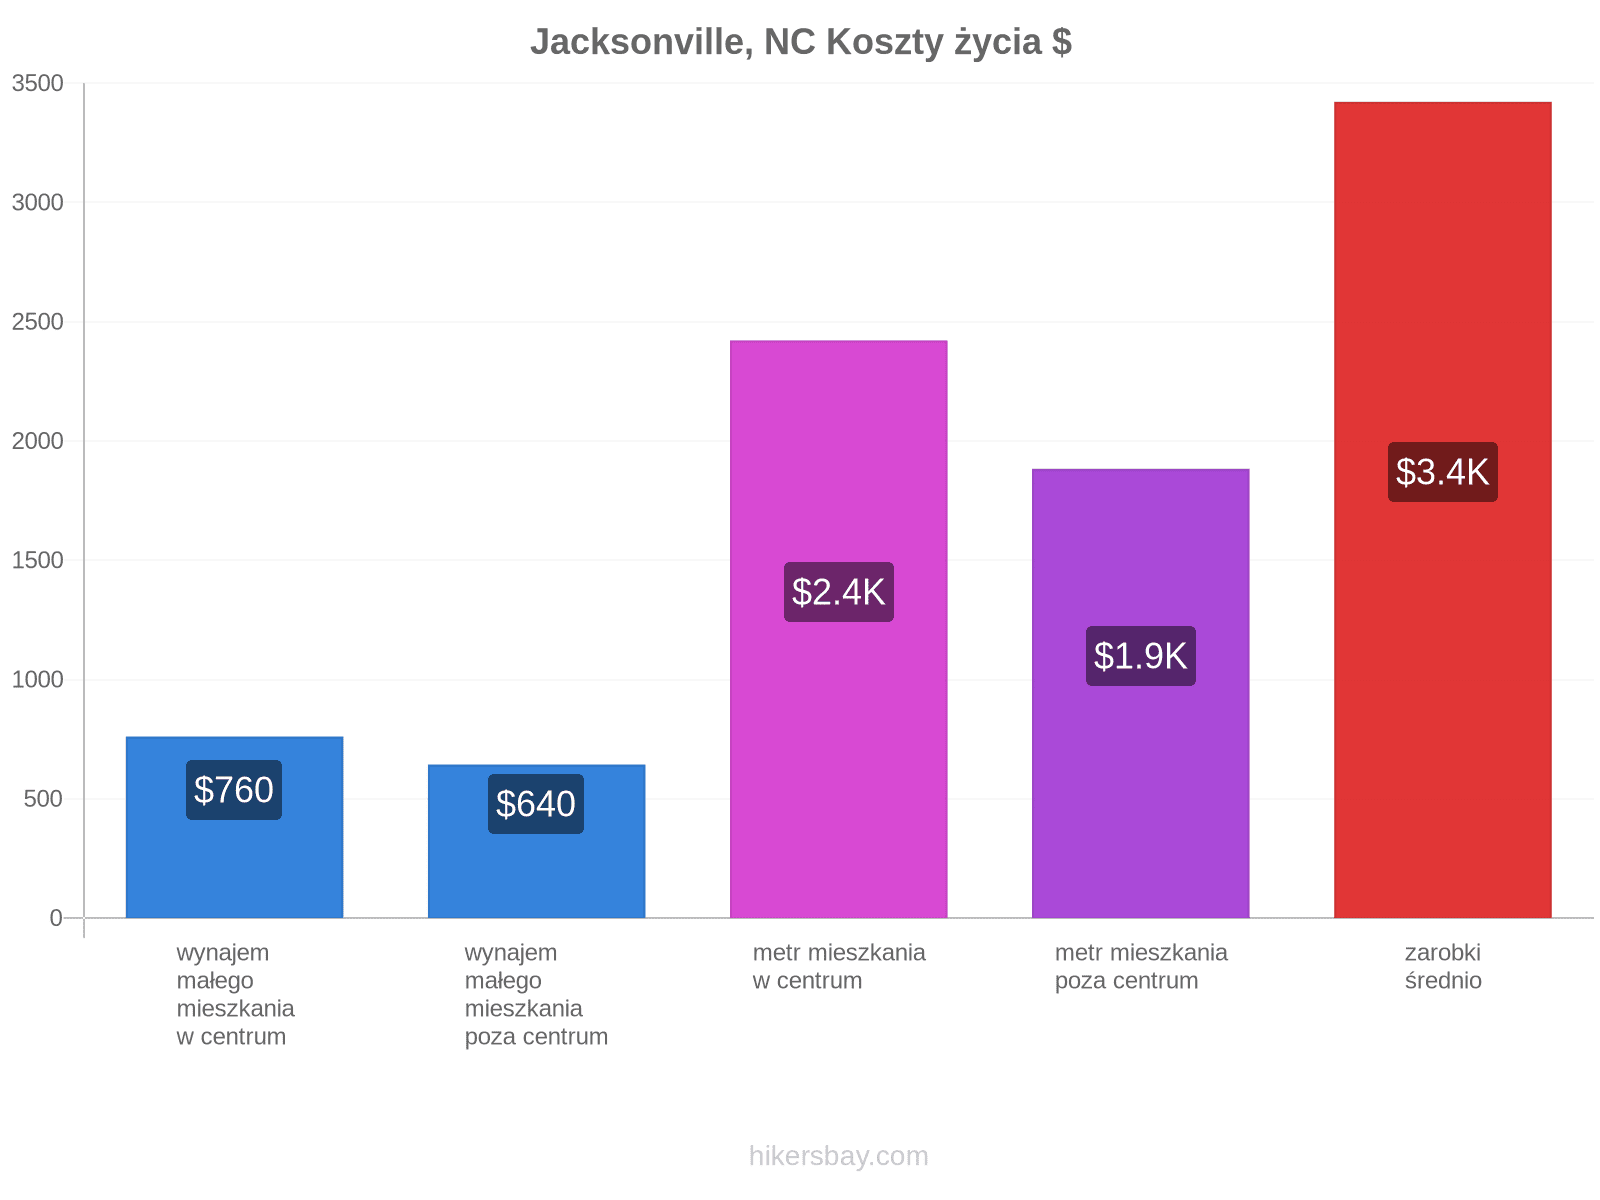 Jacksonville, NC koszty życia hikersbay.com